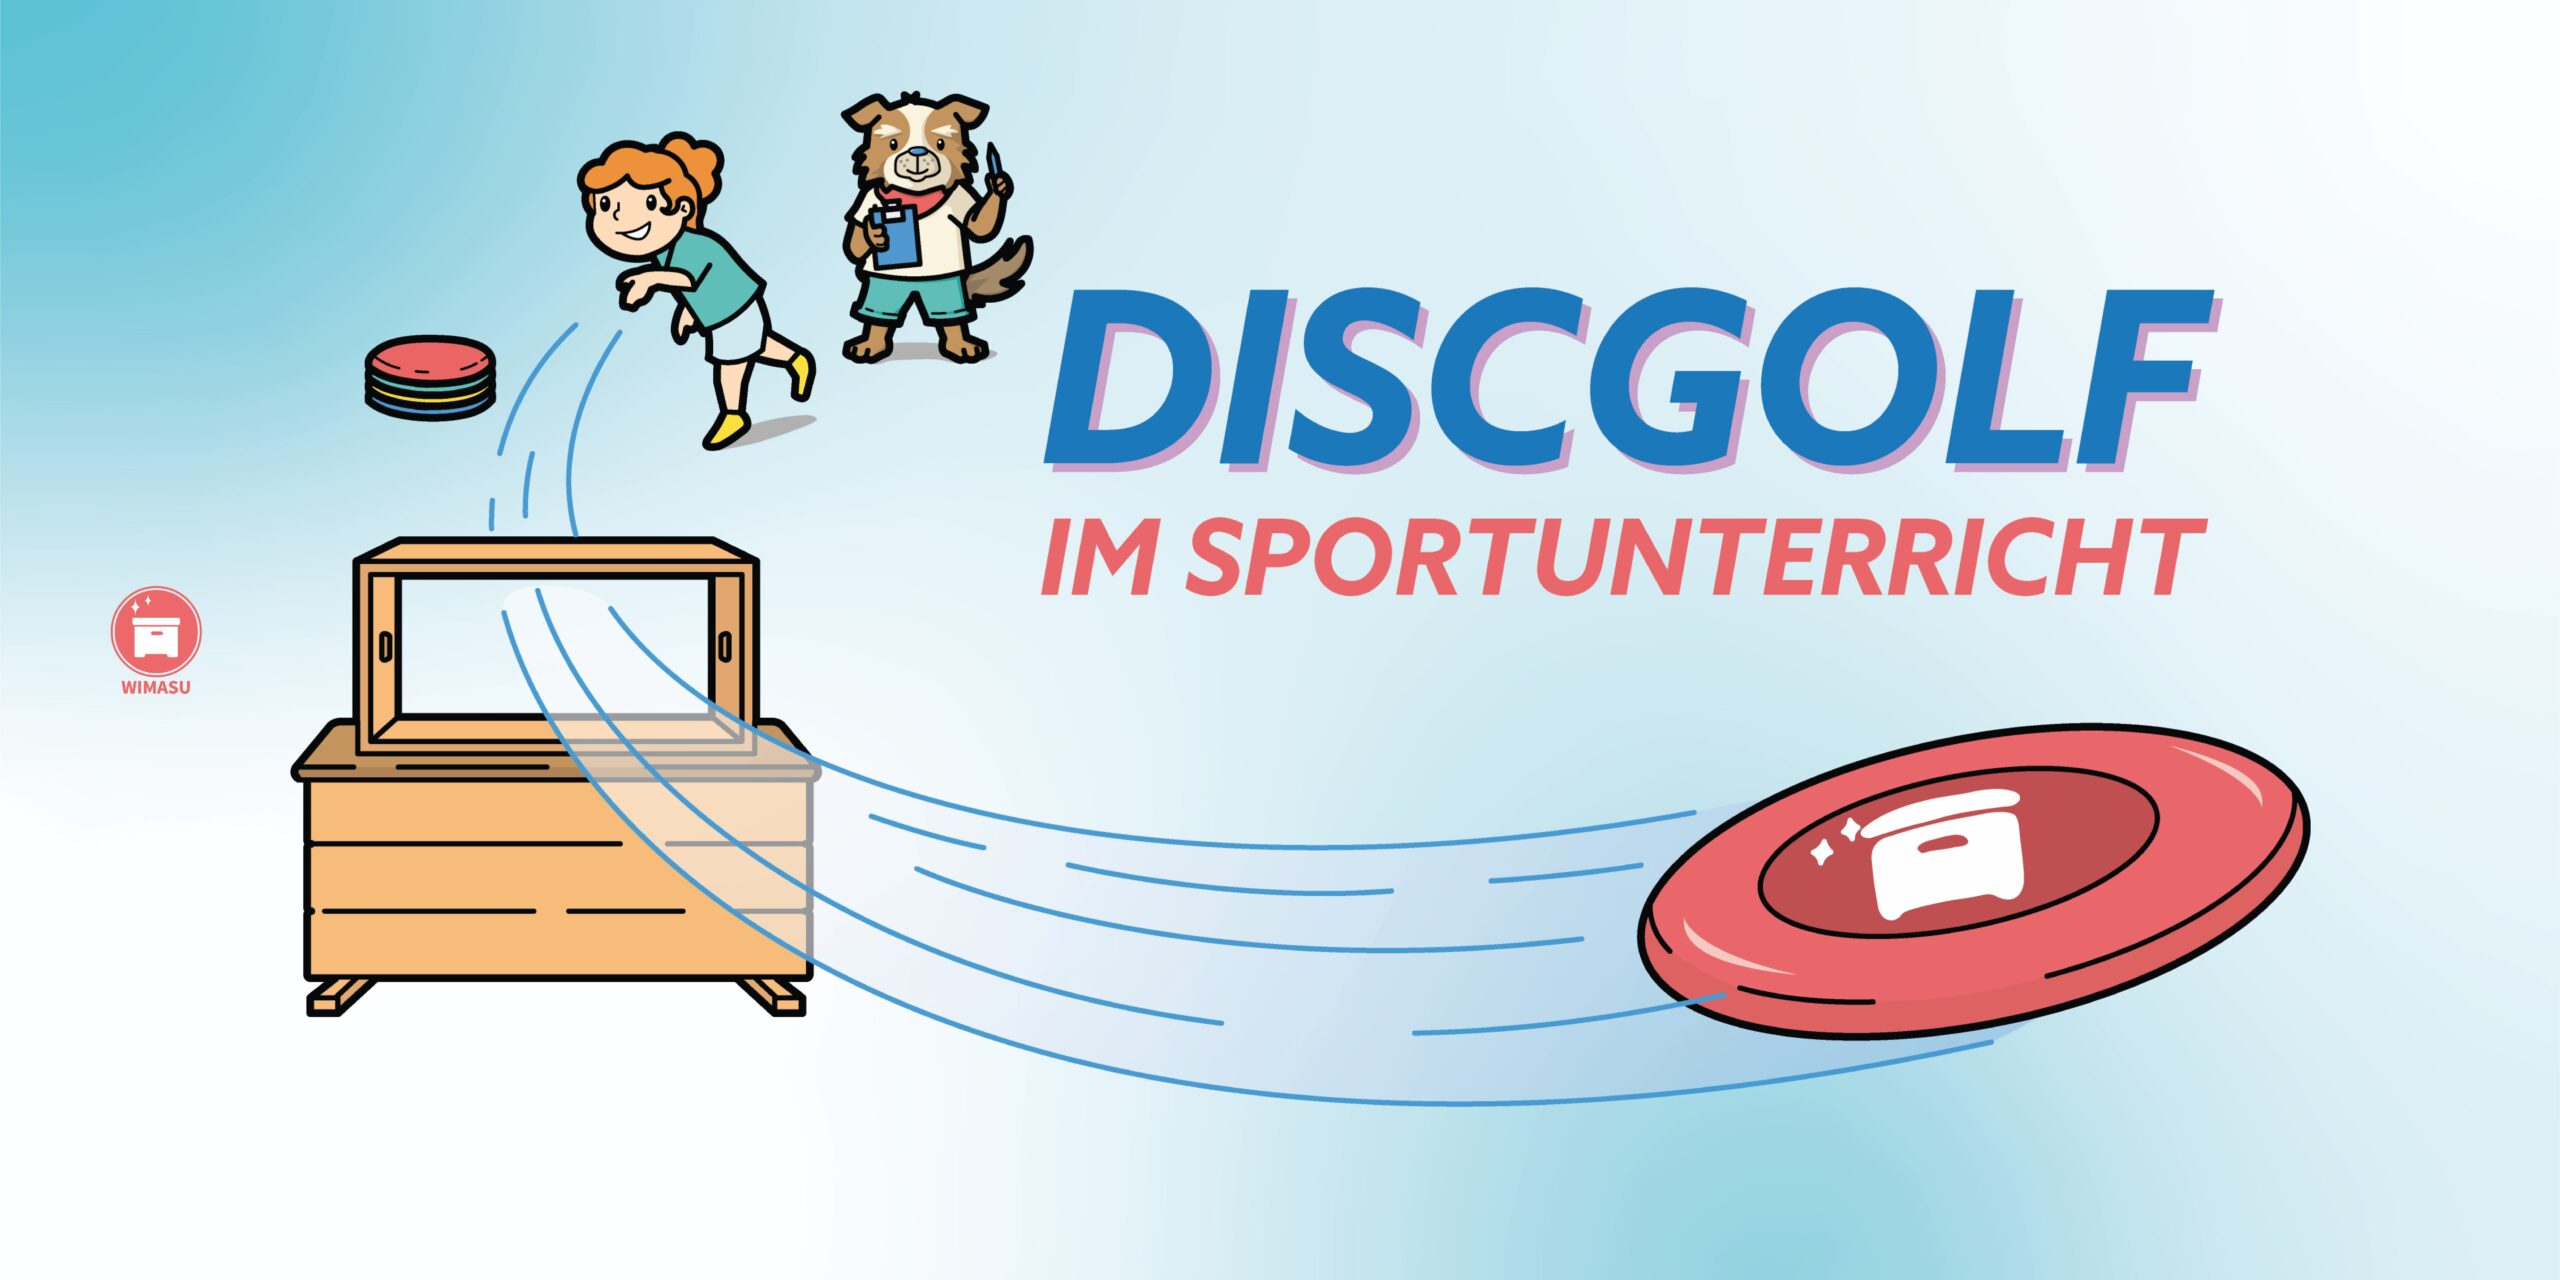 wimasu-discgolf-frisbee-Sportunterricht